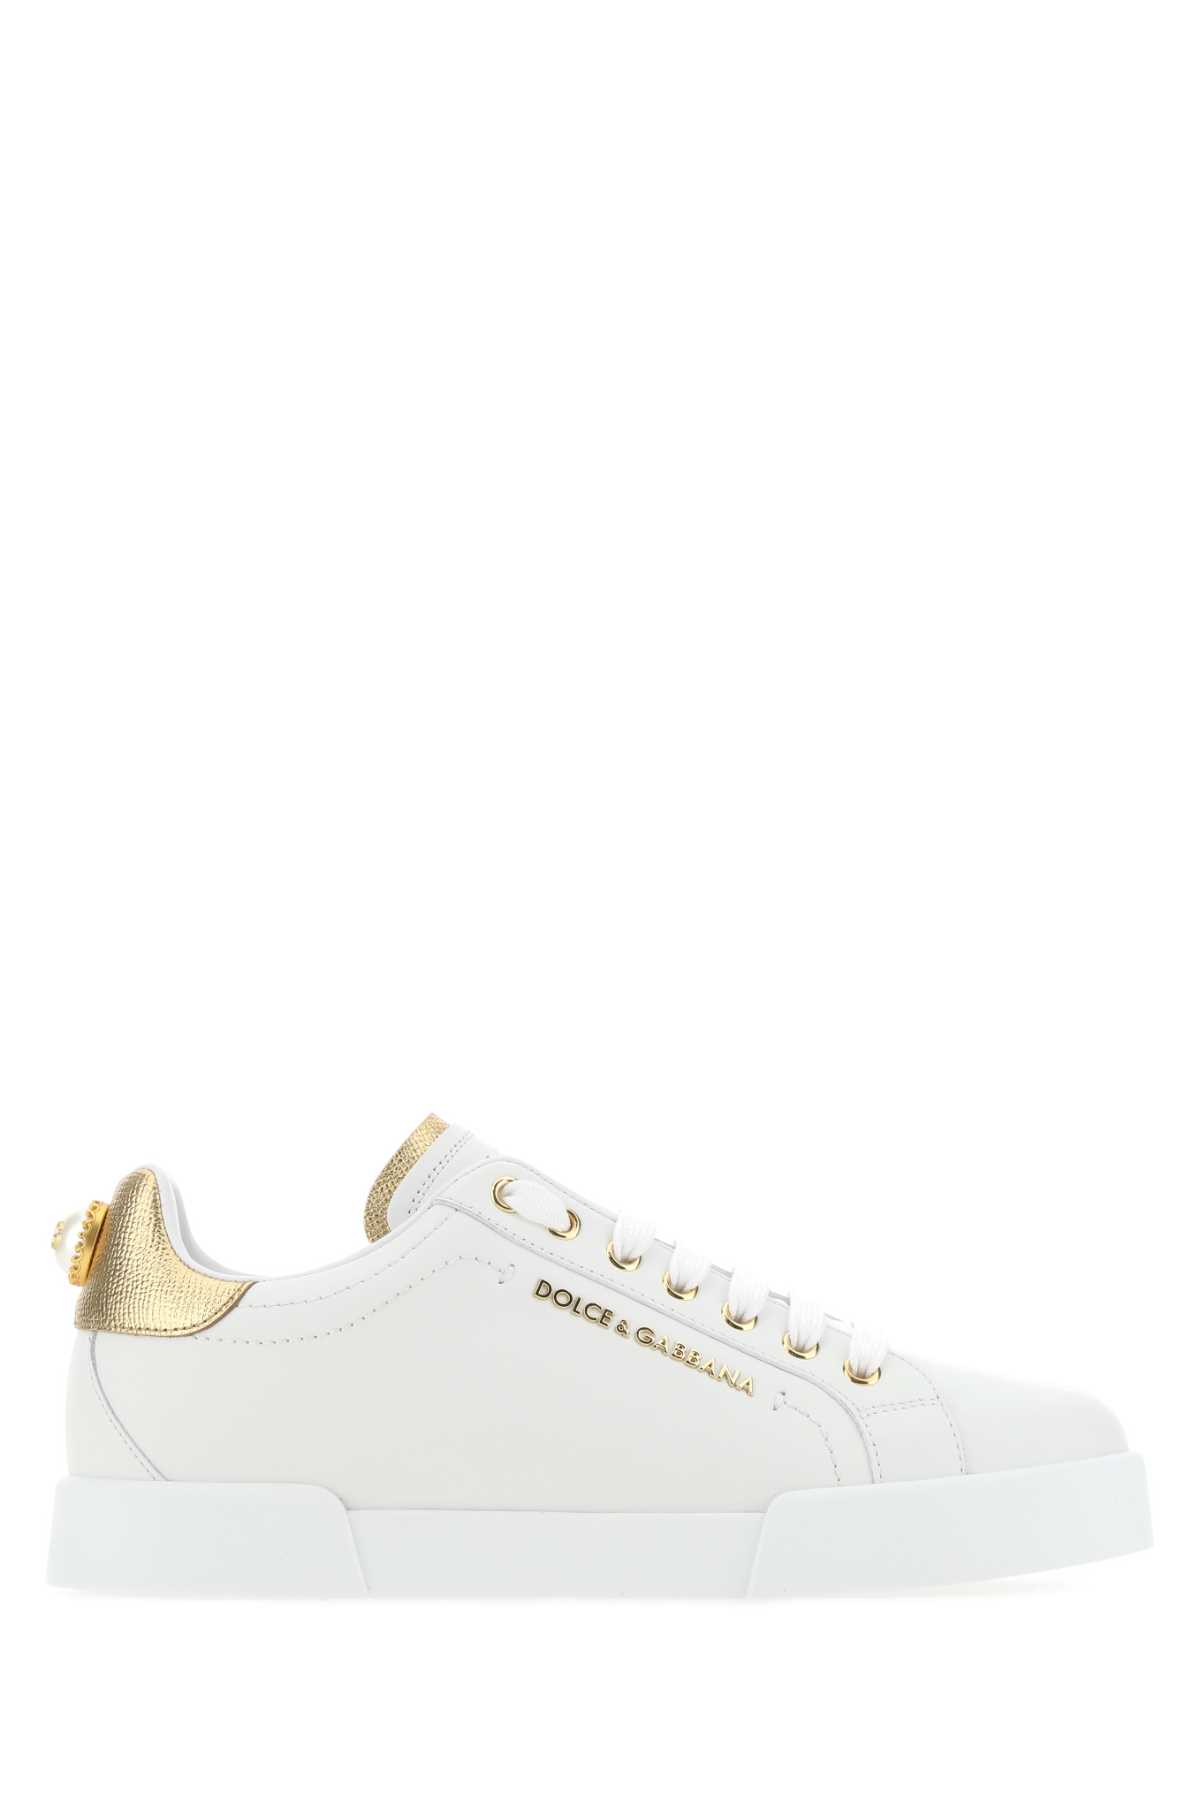 Shop Dolce & Gabbana White Nappa Leather Portofino Sneakers In 8b996